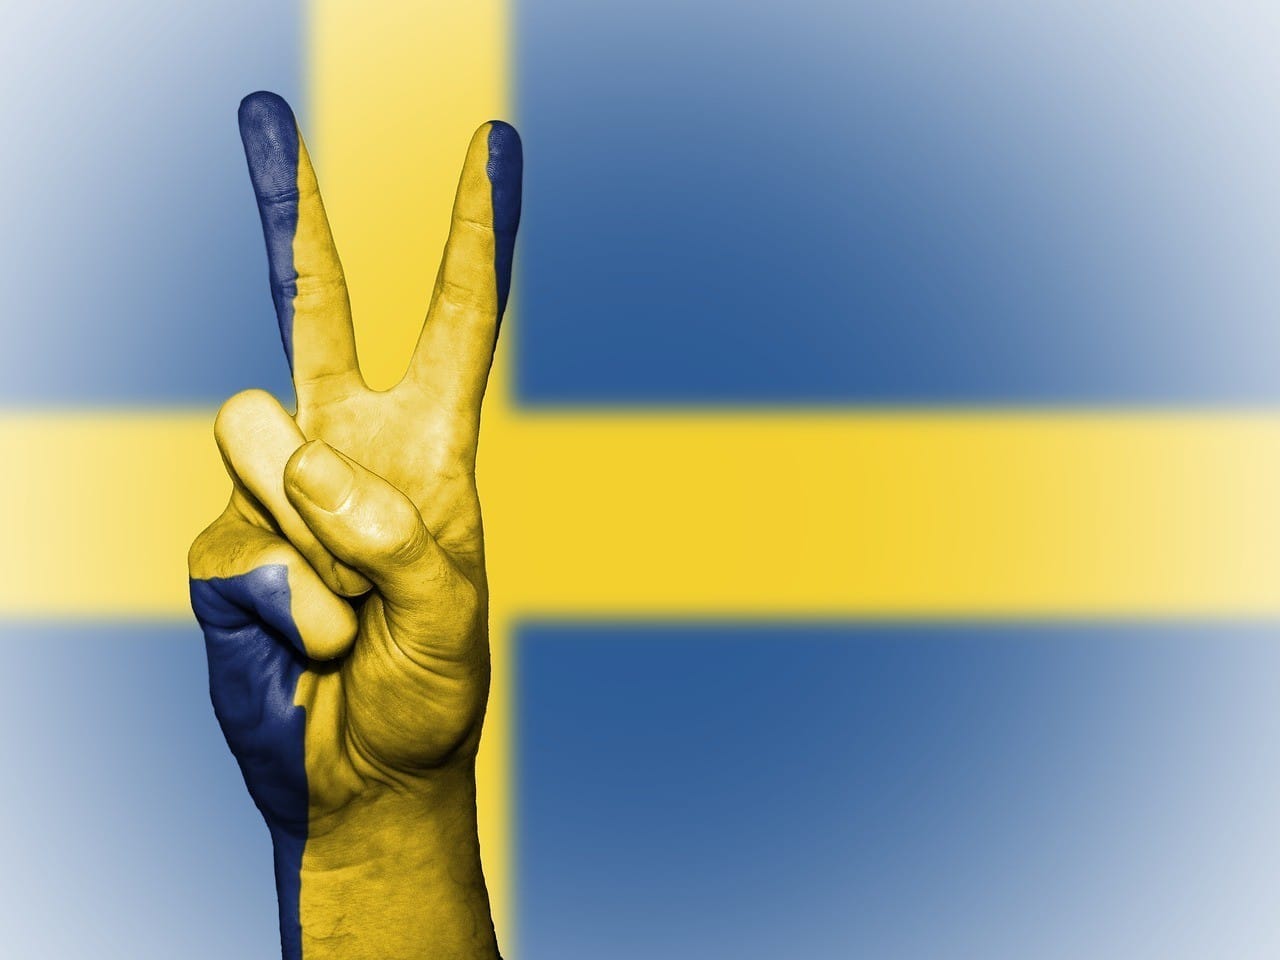 Zweedse minister van Justitie over toegenomen geweldsmisdrijven als gevolg van migratie: "Het maakt mij niet uit"